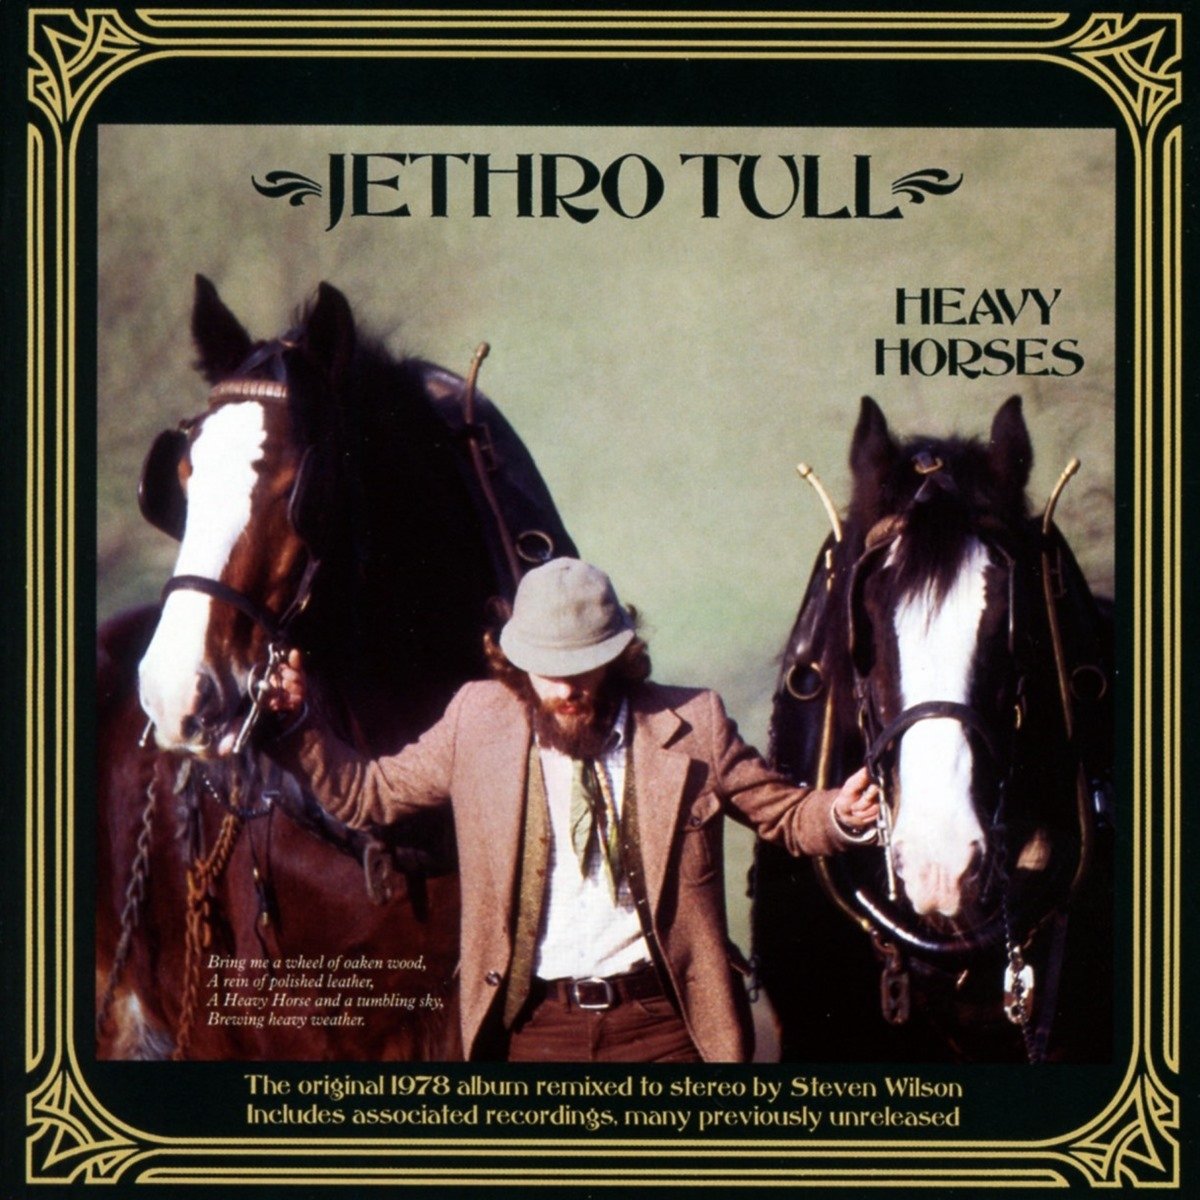 Heavy Horses -Steven Wilson Remix | Jethro Tull image0